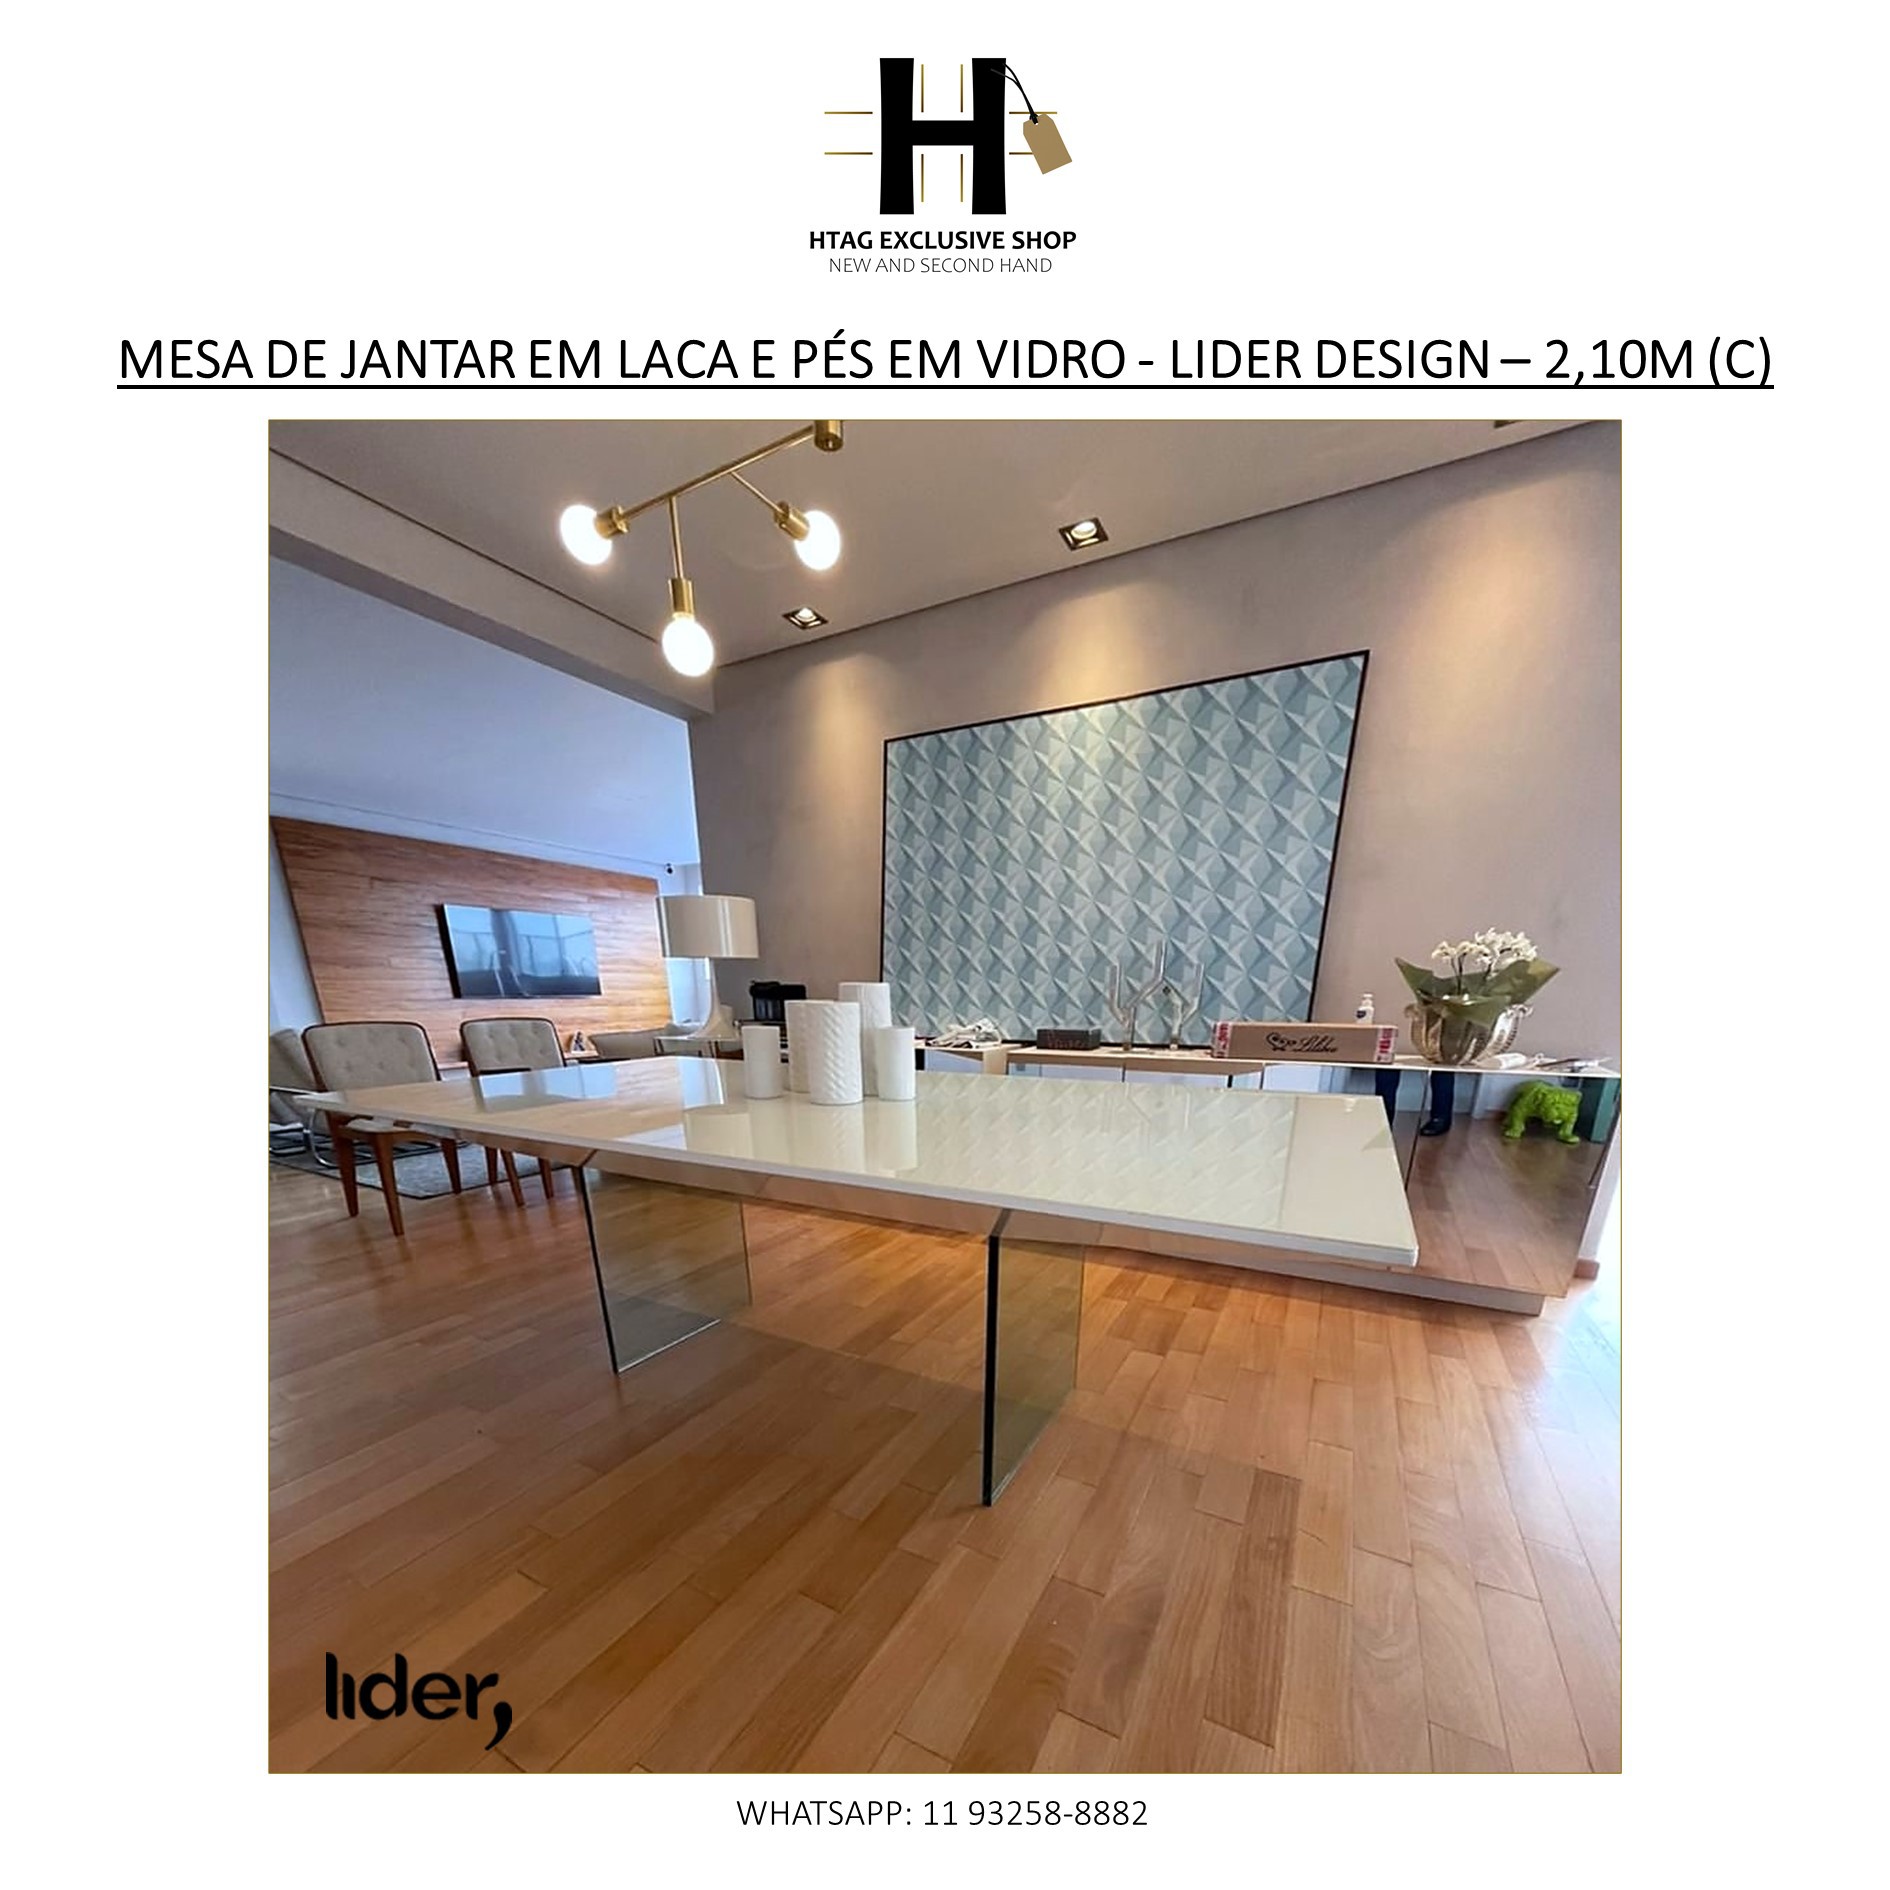 Mesa de jantar em laca ranca com . Luxo, design, decorção, - HTAG EXCLUSIVE  SHOP - New & Second Hand